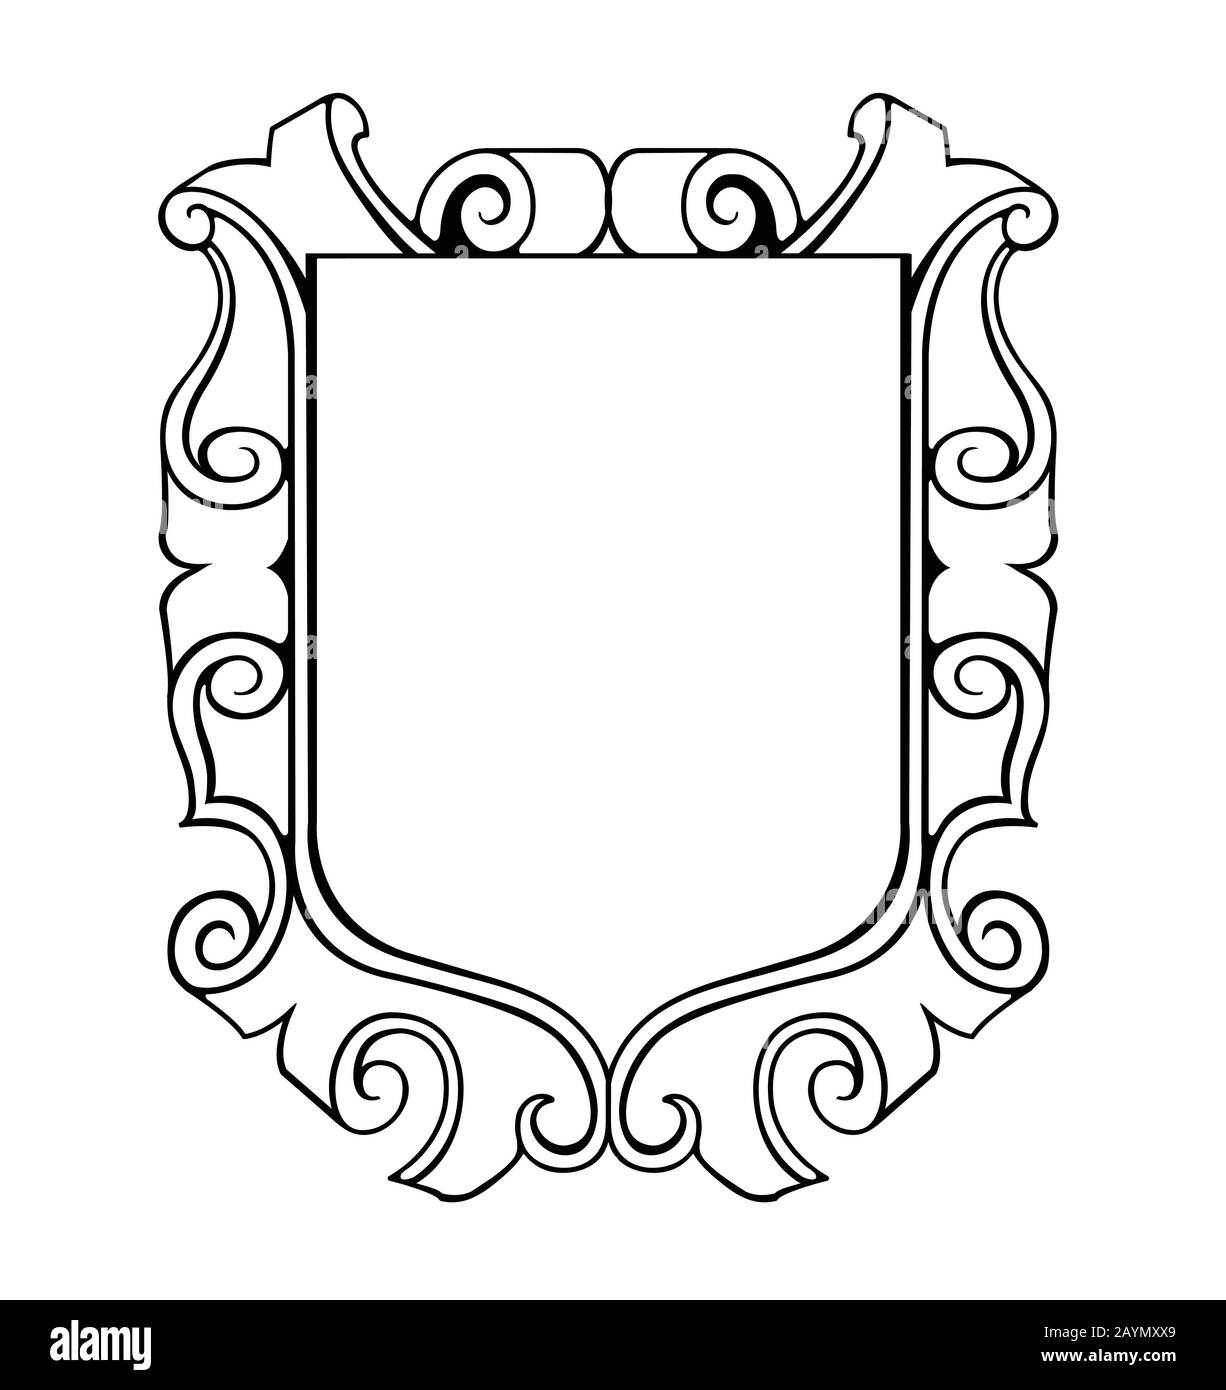 shield emblem ilustration (outline) Stock Vector